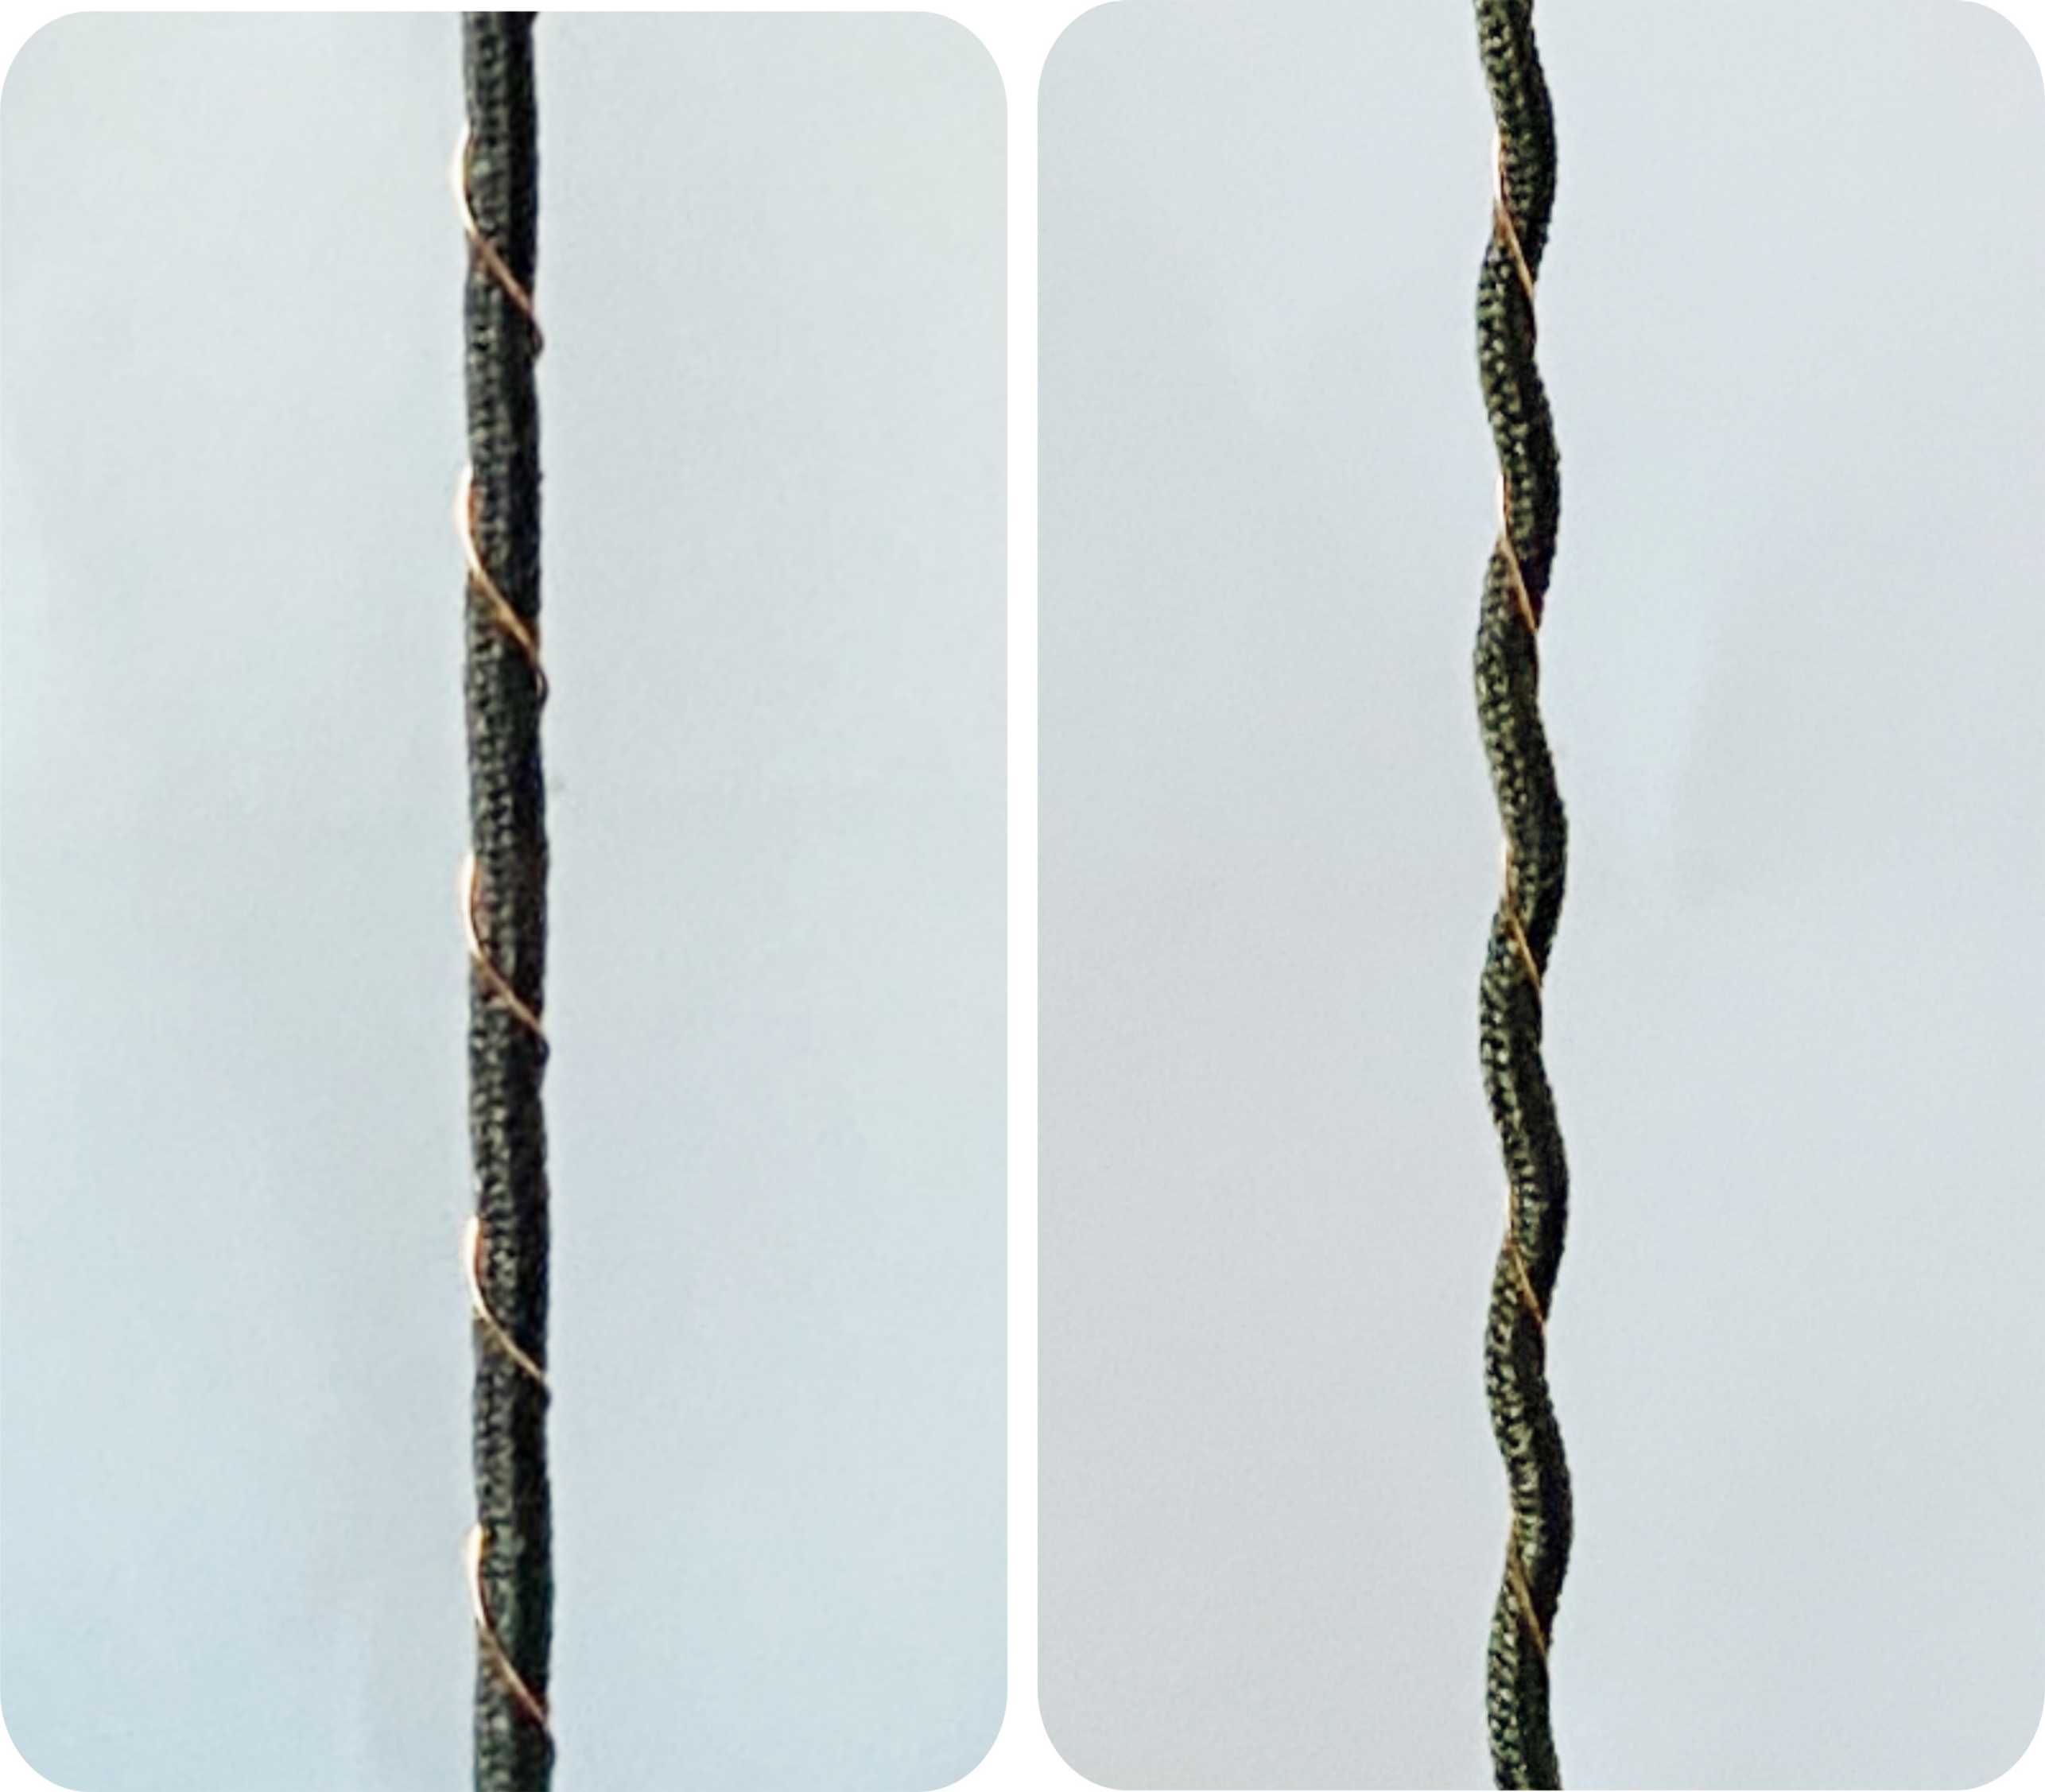 Vergr?sserte Ansicht: Links: das Garn mit leitendem Gummi statisch gerade, Rechts: das Garn mit leitendem Gummi unter Zug spiralförmig.